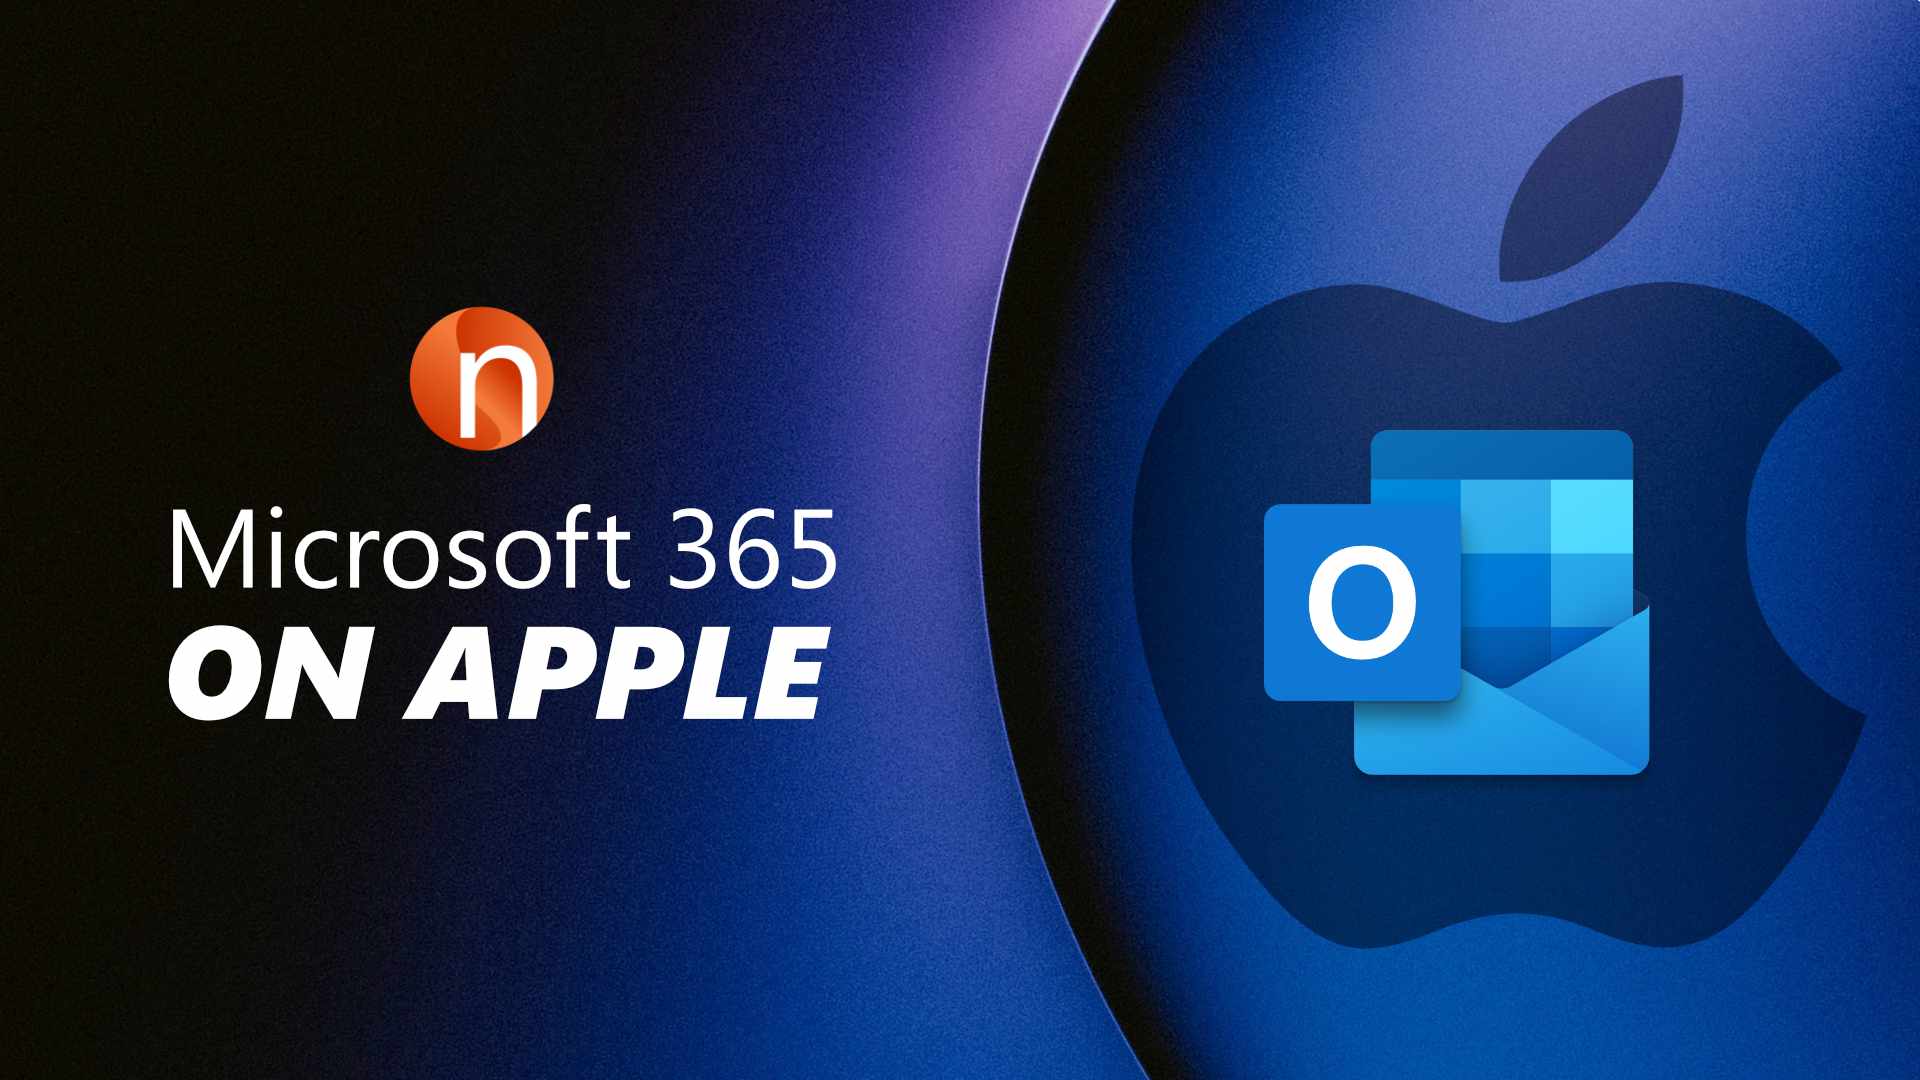 Microsoft 365 on Apple